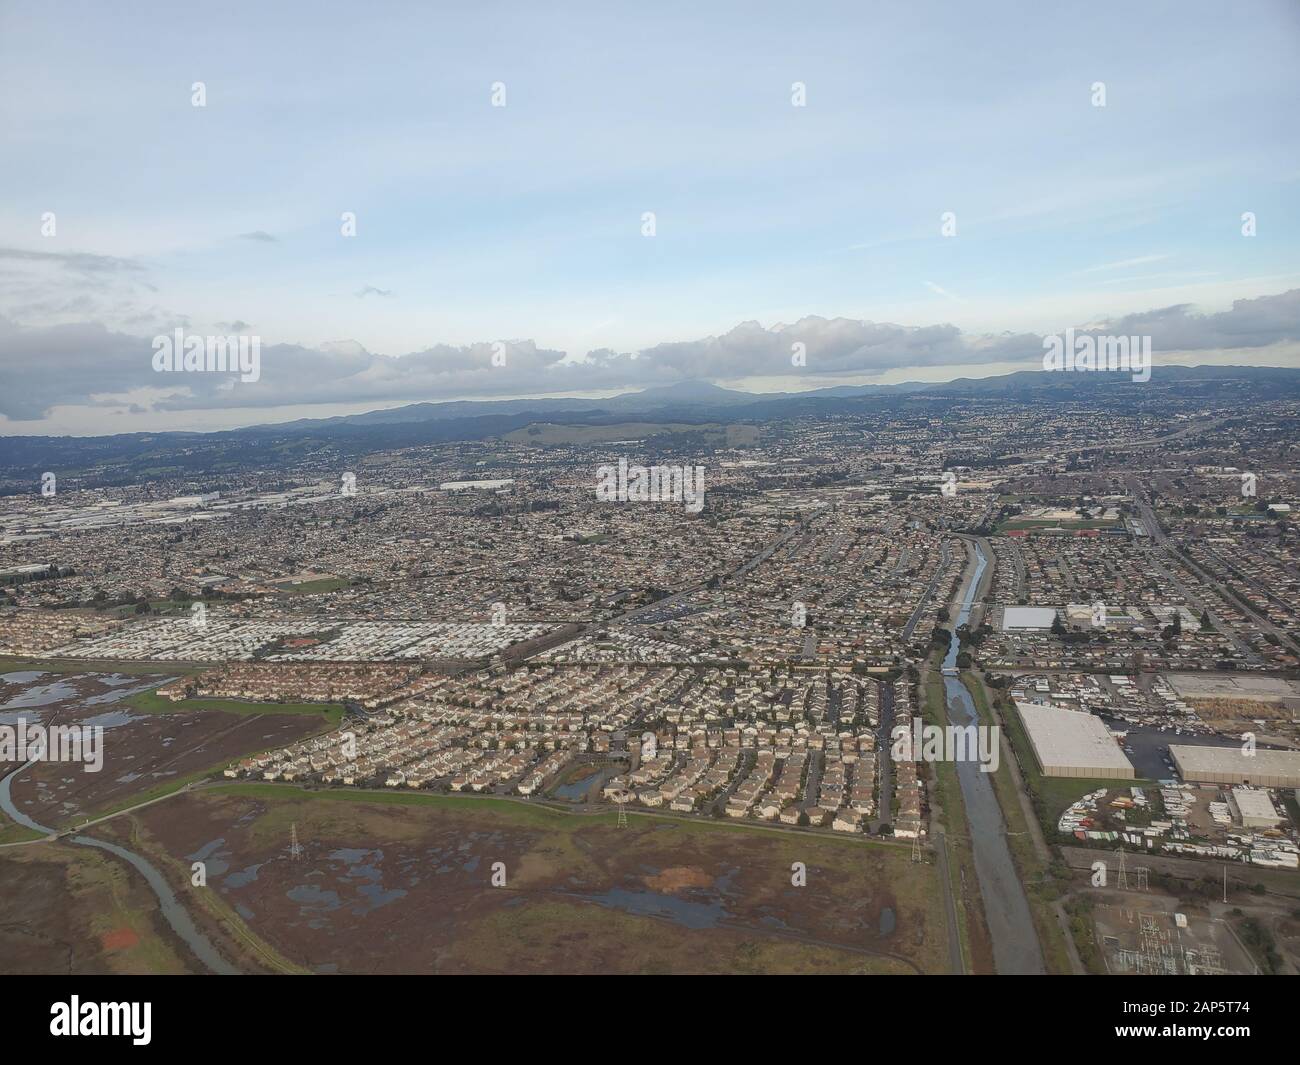 Heron Bay et des quartiers sont visibles dans une vue aérienne de la région de la baie est de la baie de San Francisco, San Leandro, Californie, 8 janvier 2020. () Banque D'Images